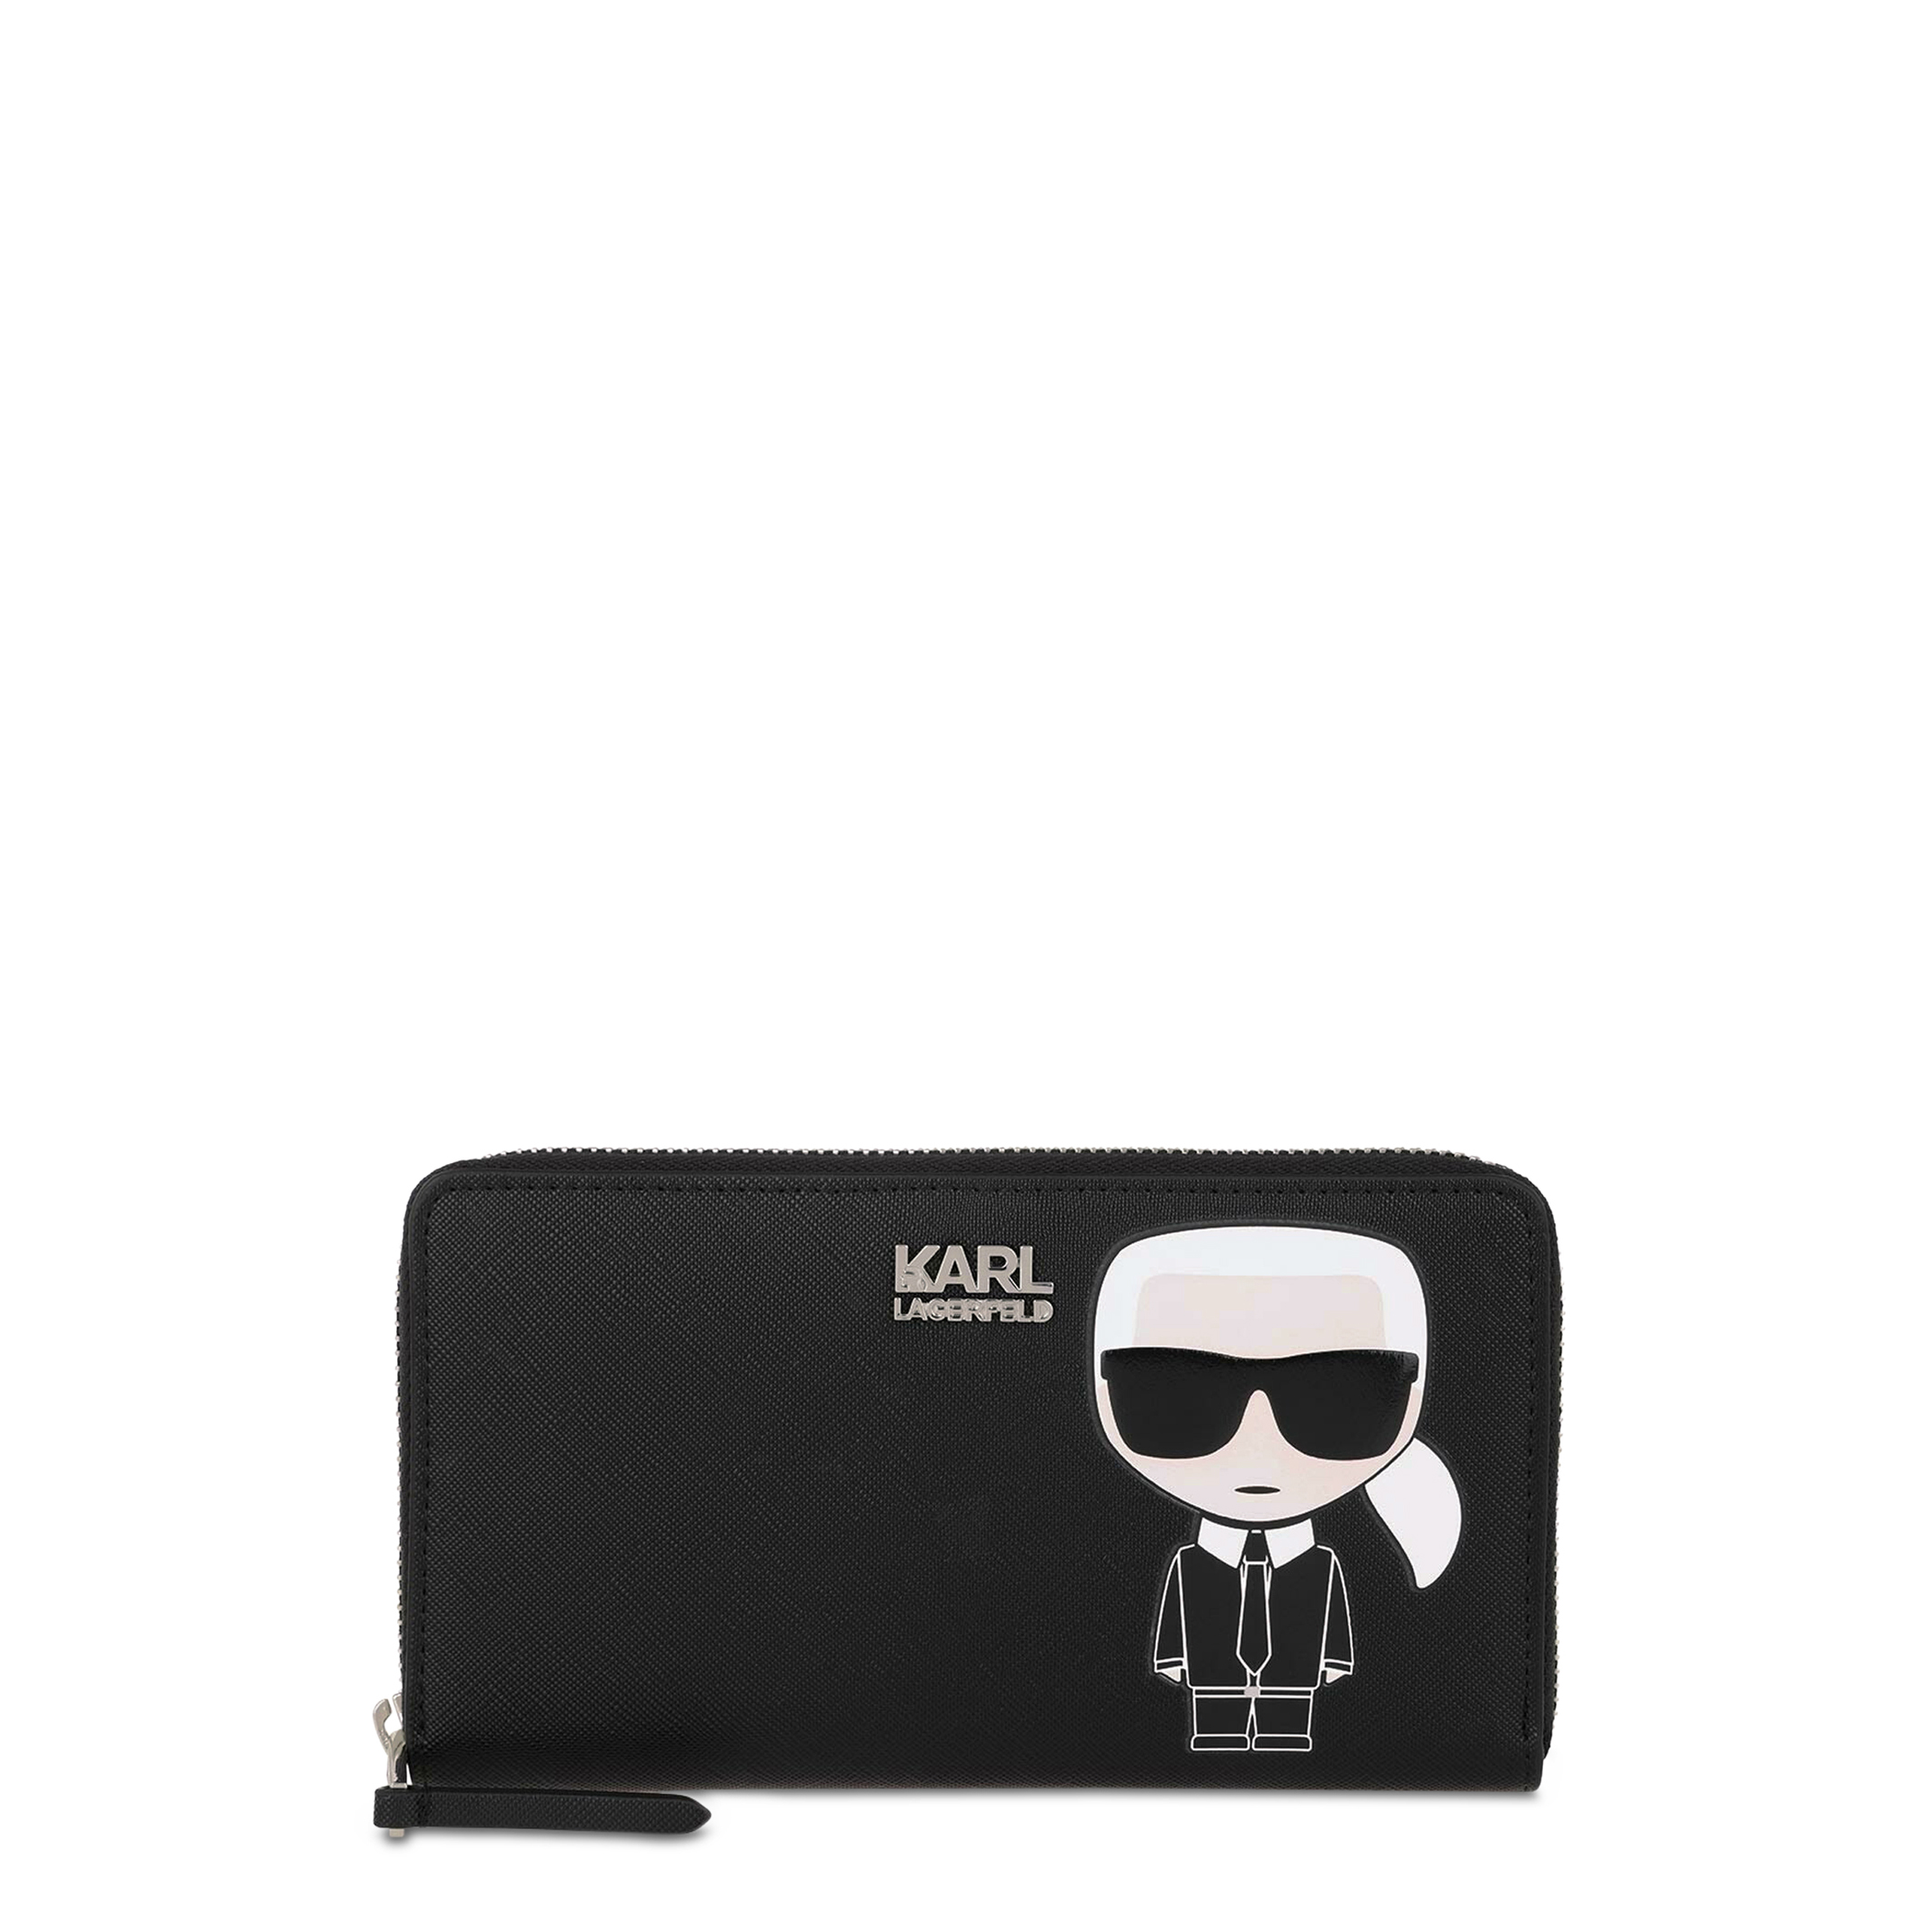 Karl Lagerfeld Black Wallets for Women - 201W3203